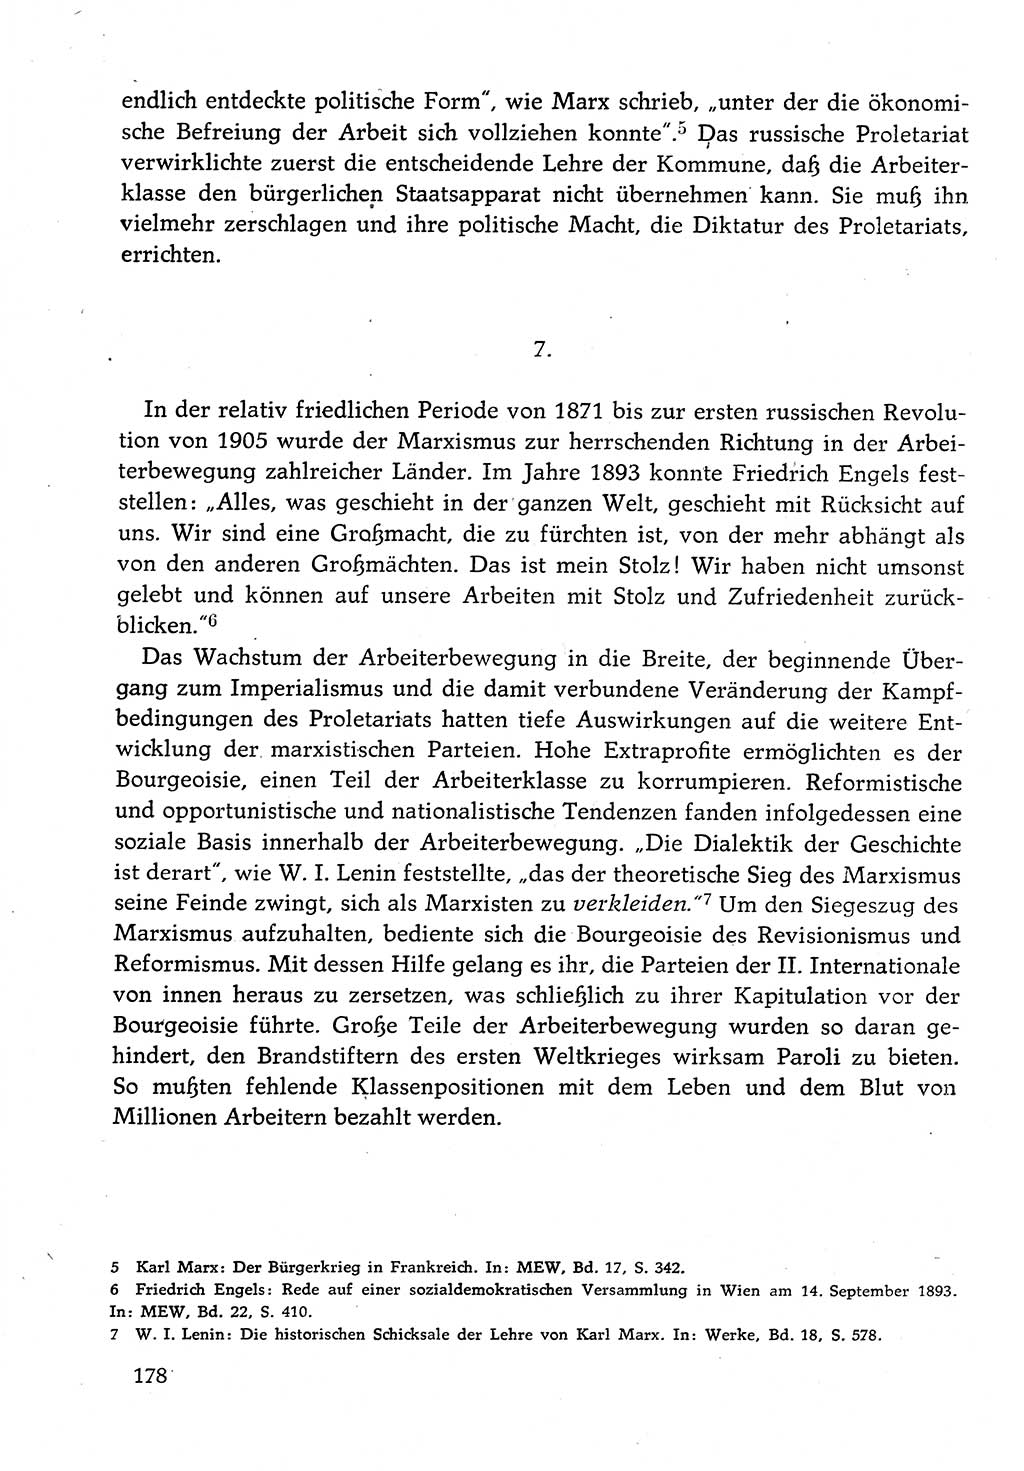 Dokumente der Sozialistischen Einheitspartei Deutschlands (SED) [Deutsche Demokratische Republik (DDR)] 1982-1983, Seite 178 (Dok. SED DDR 1982-1983, S. 178)